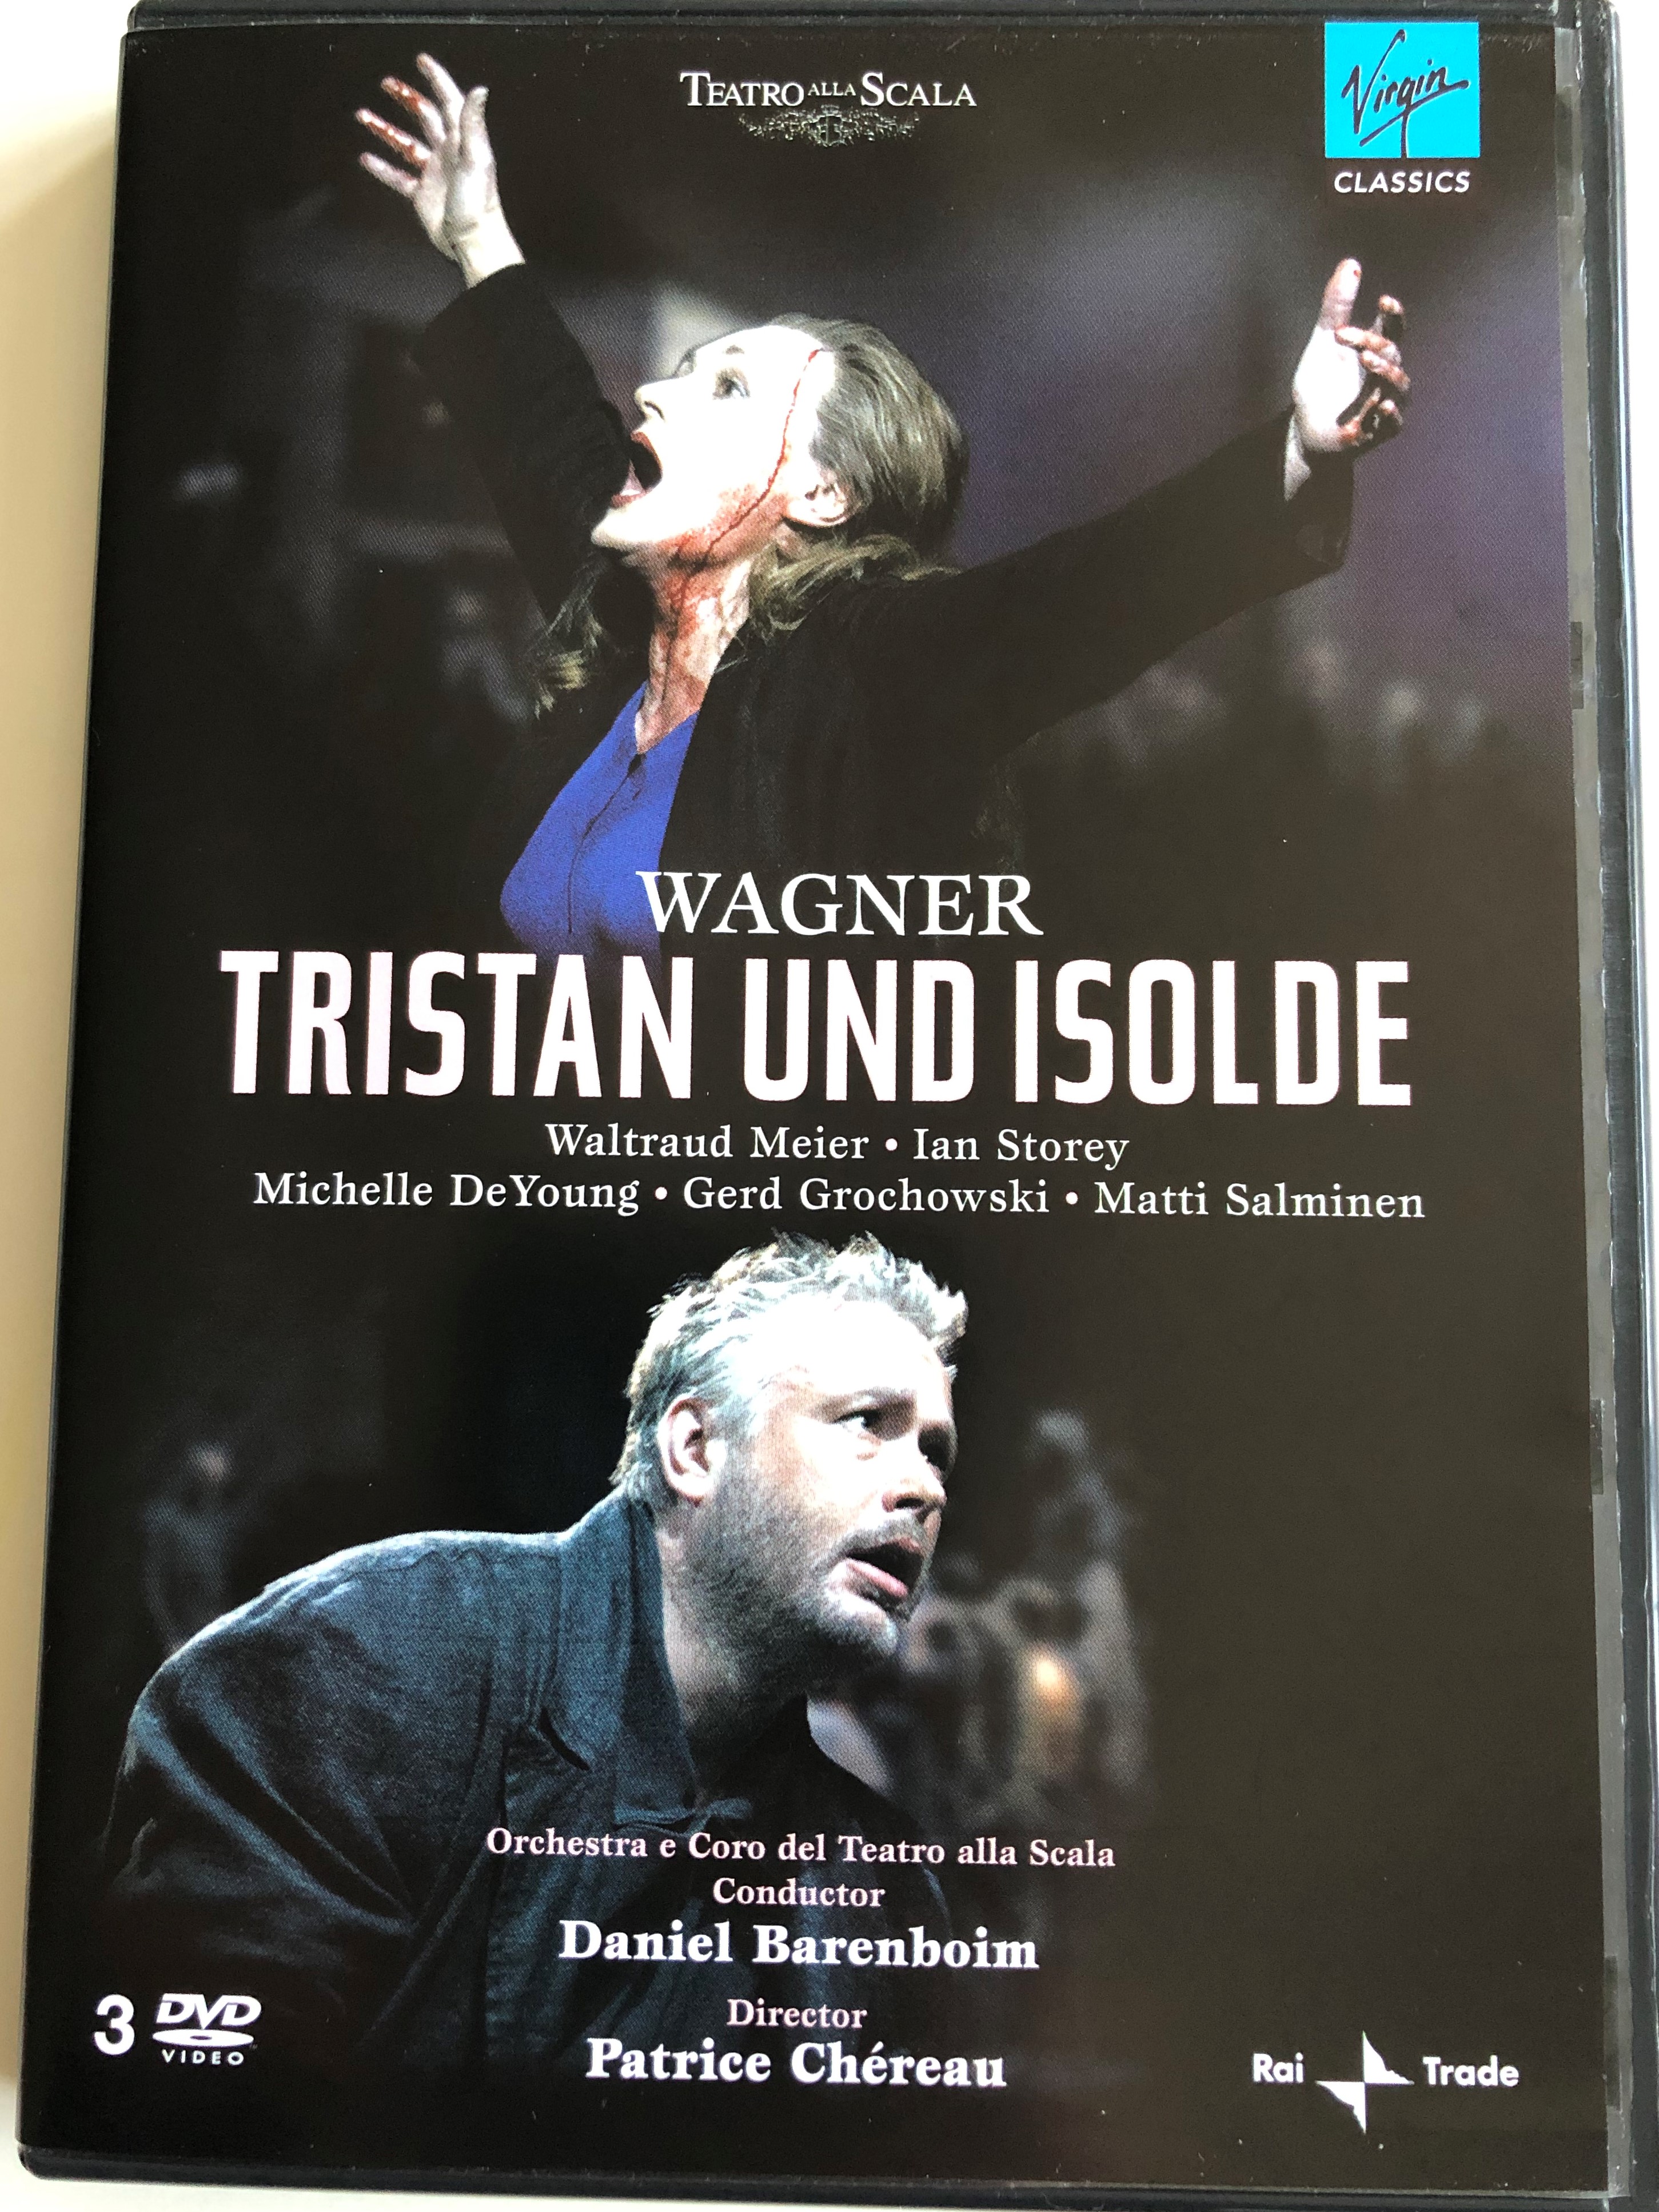 wagner-tristan-und-isolde-dvd-2008-orchestra-e-coro-del-teatro-alla-scala-1.jpg